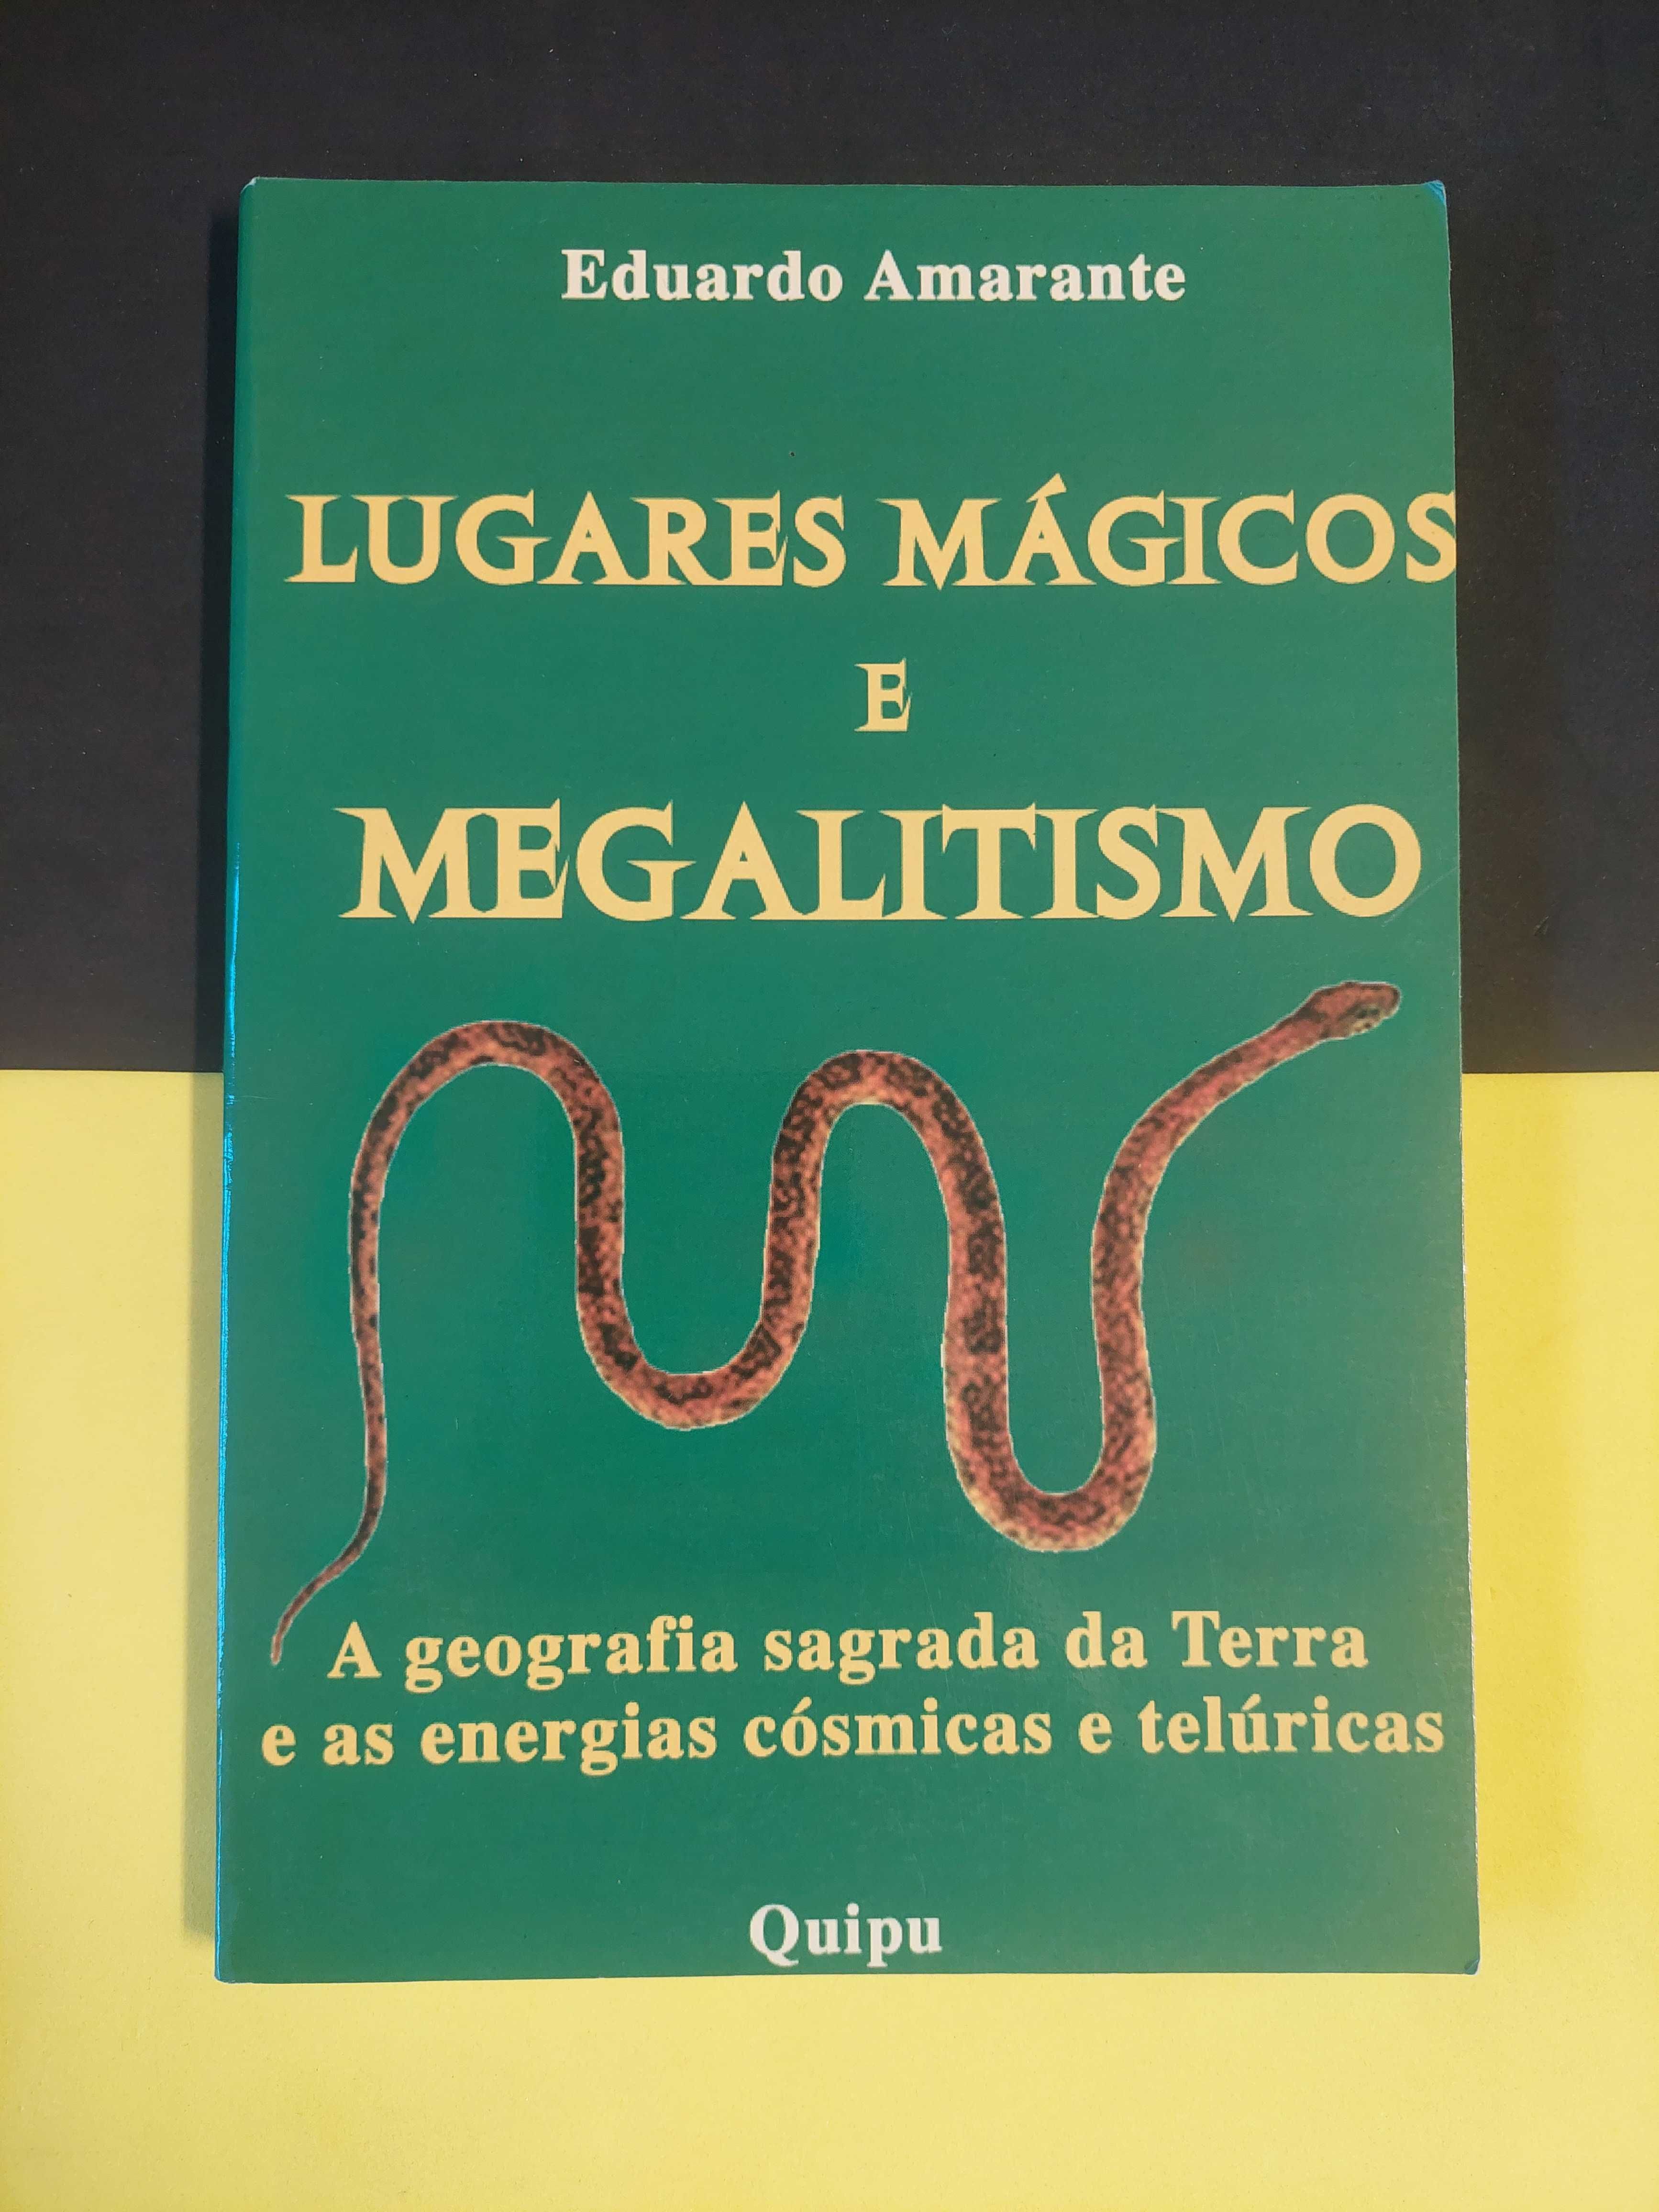 Eduardo Amarante - Lugares mágicos e megalitismo